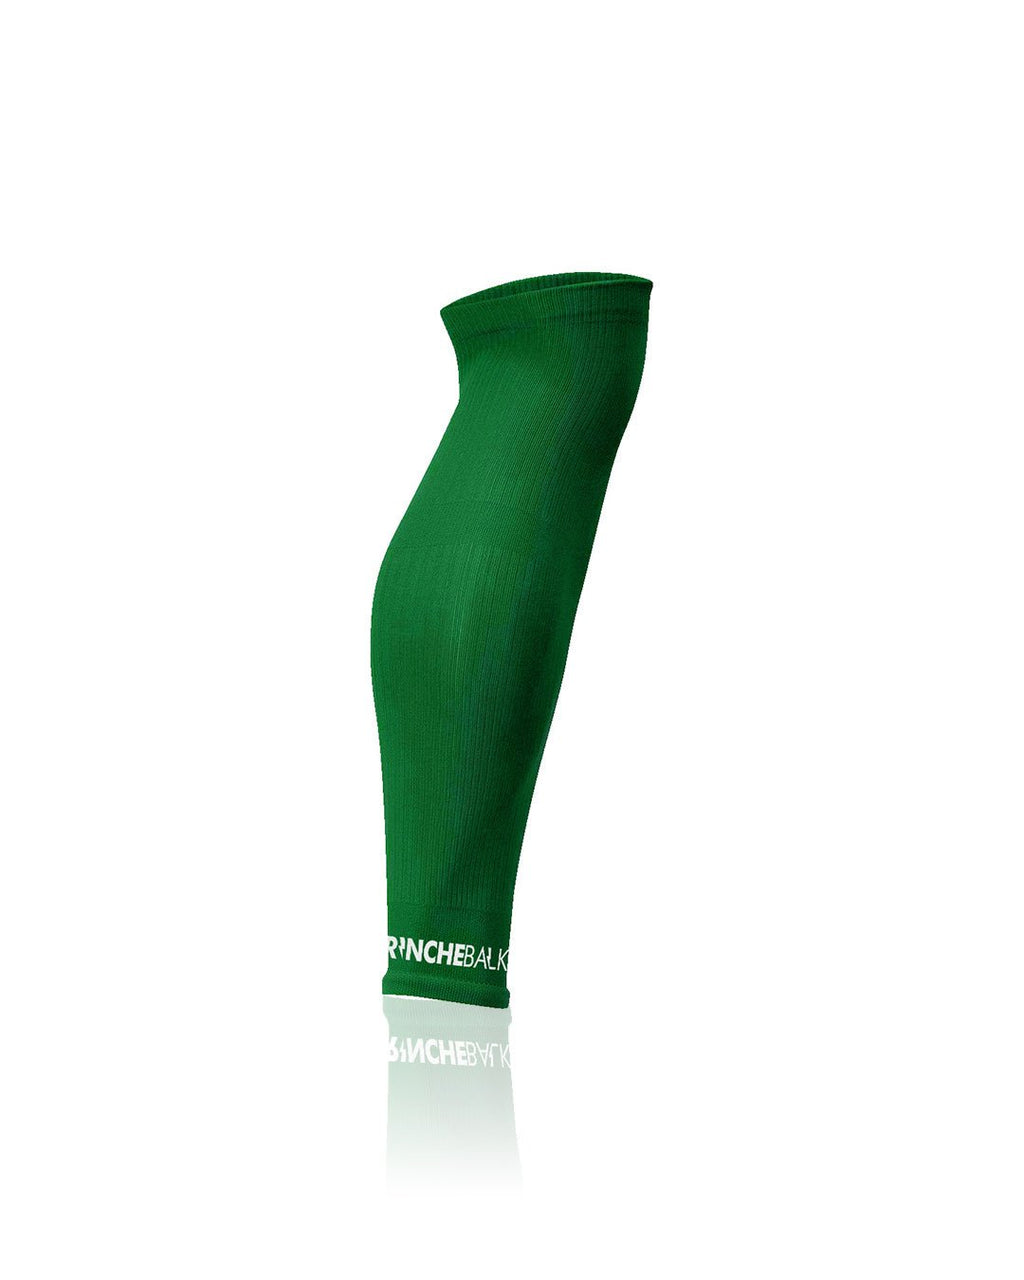 Calcetines Antideslizantes Fútbol TrincheBalk V1 Verdes - Máximo Agarre y  Confort